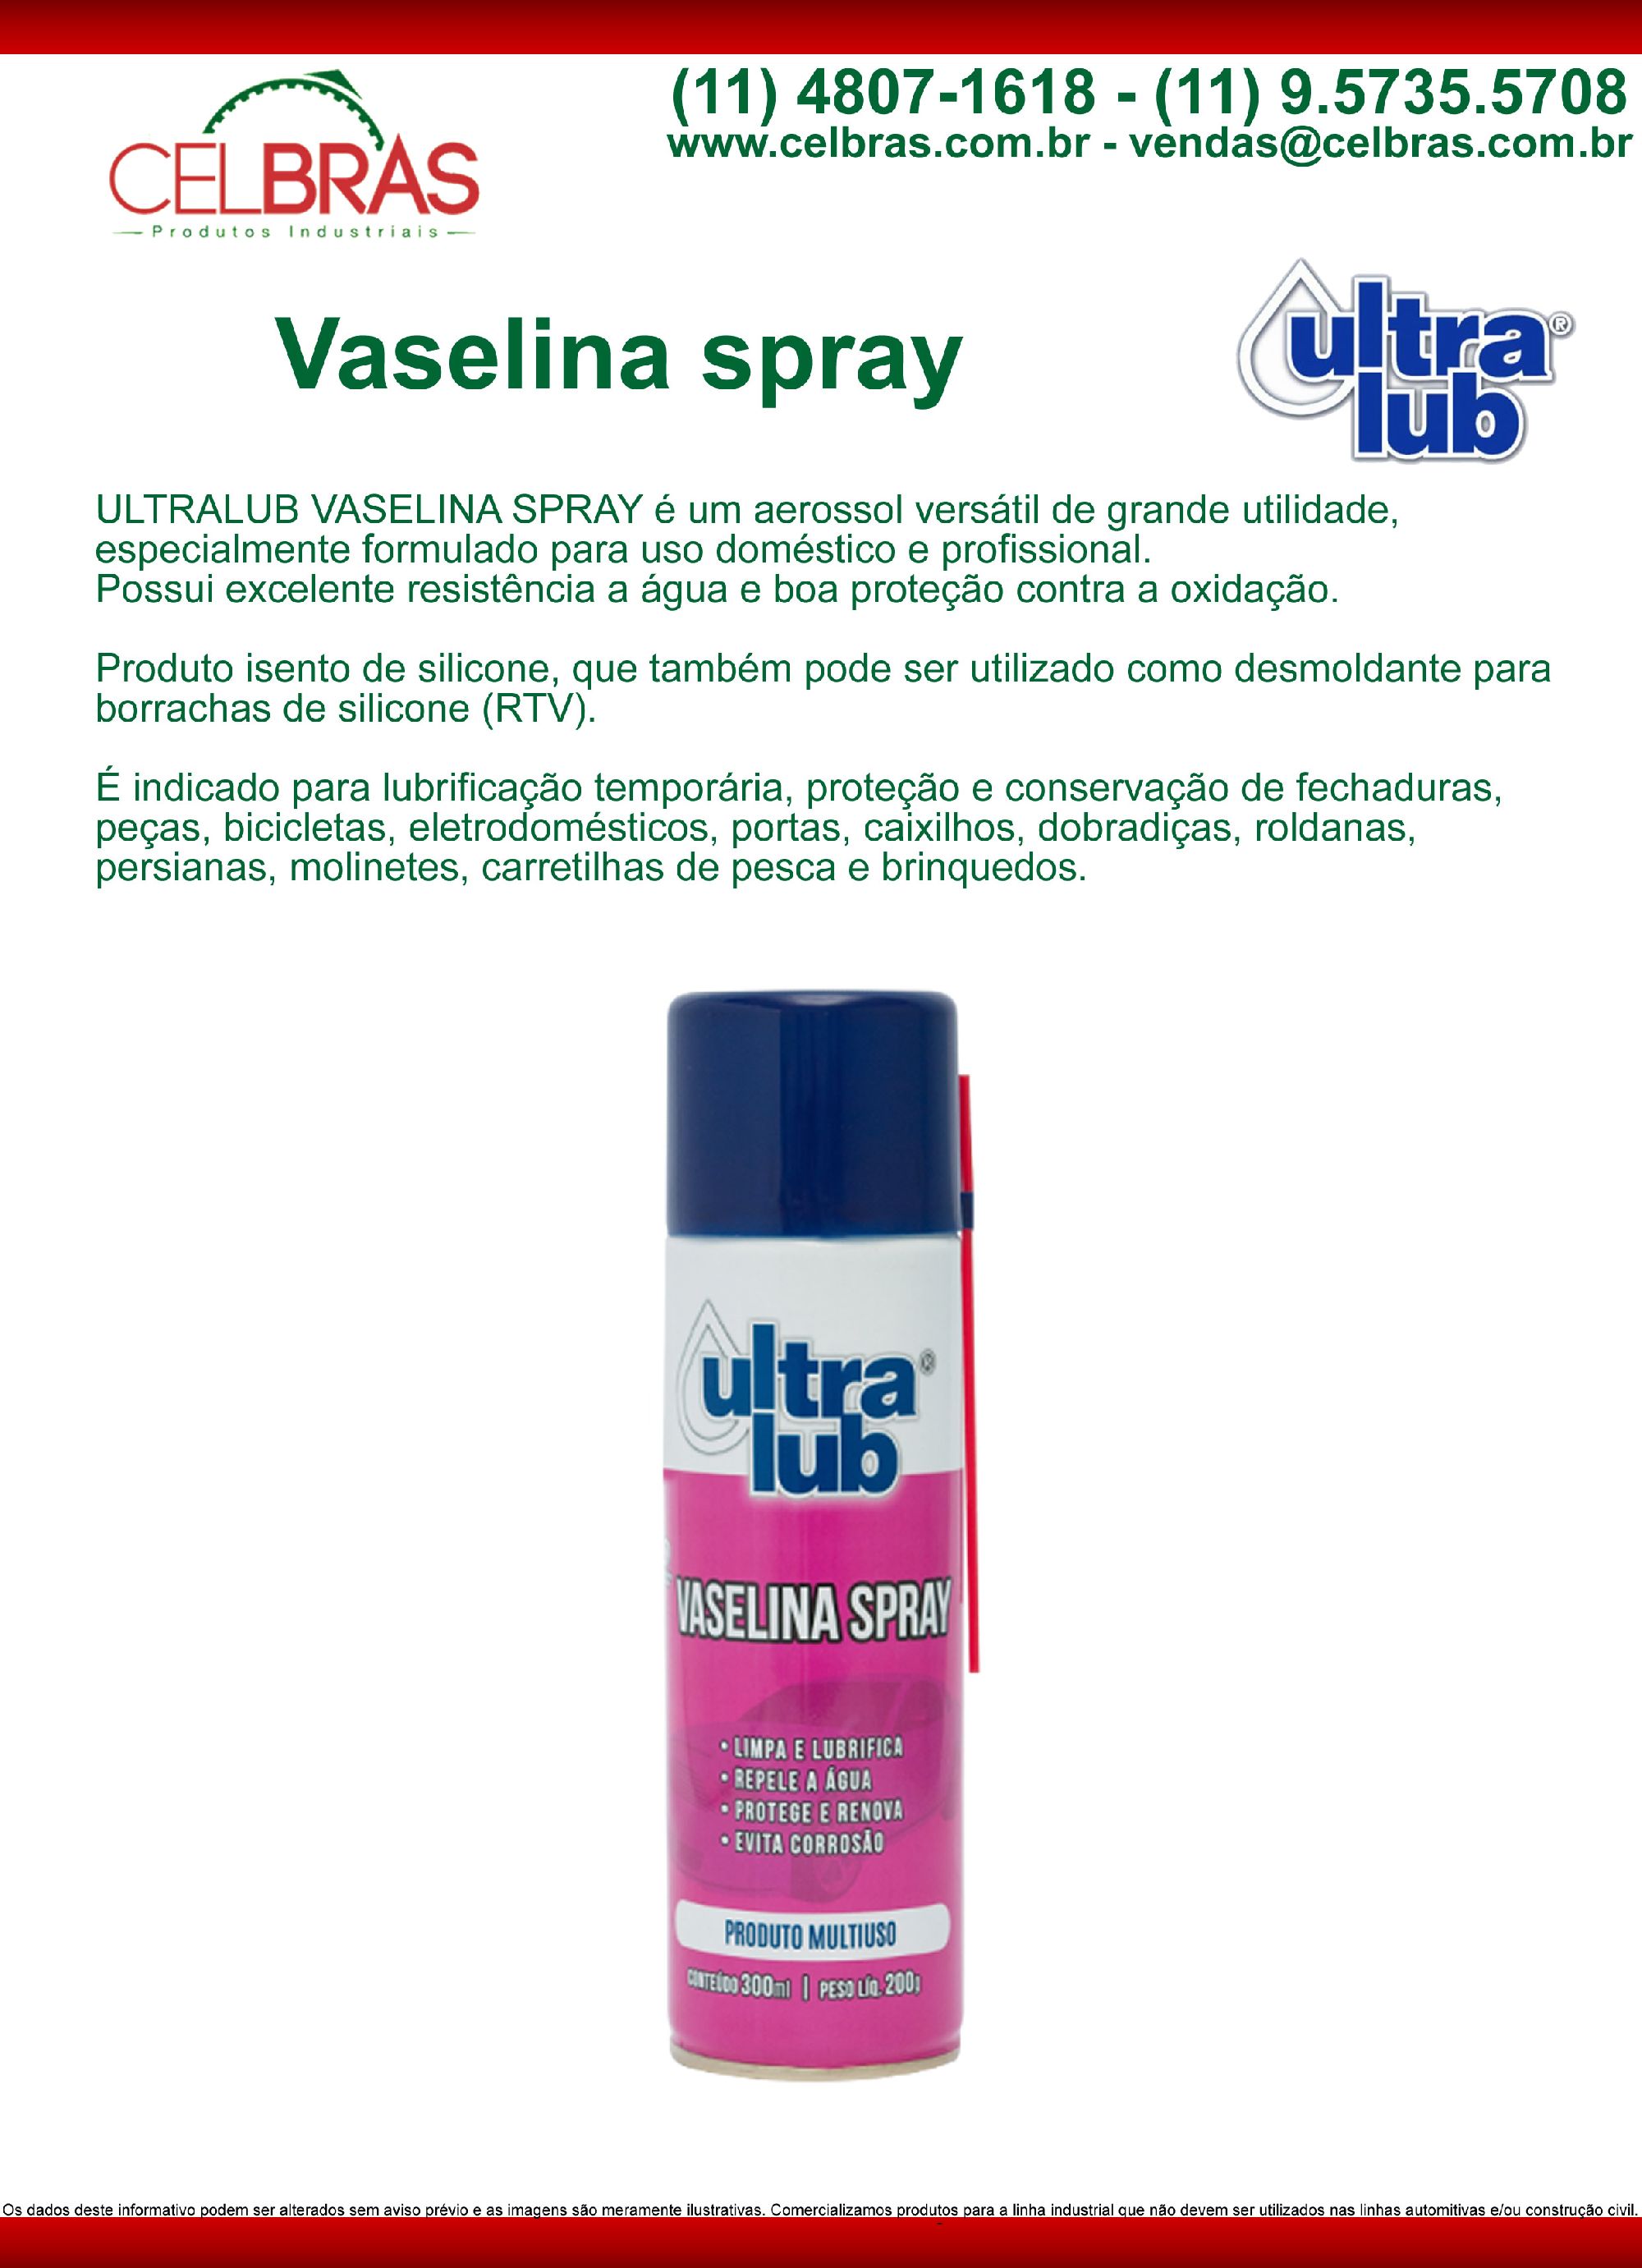 Vaselina Spray